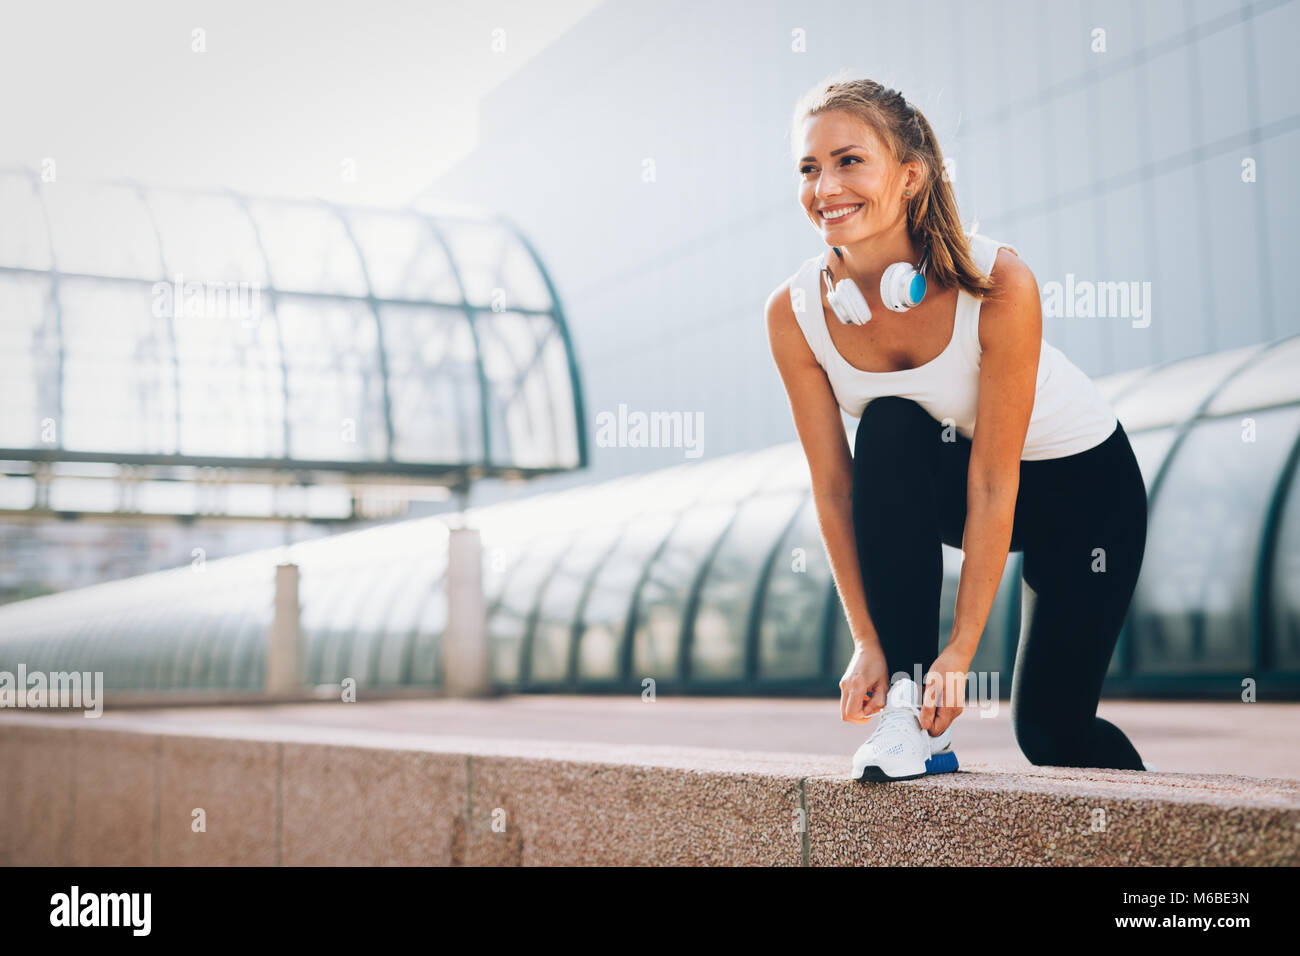 Bild von jungen attraktiven Happy fitness Frau Stockfoto